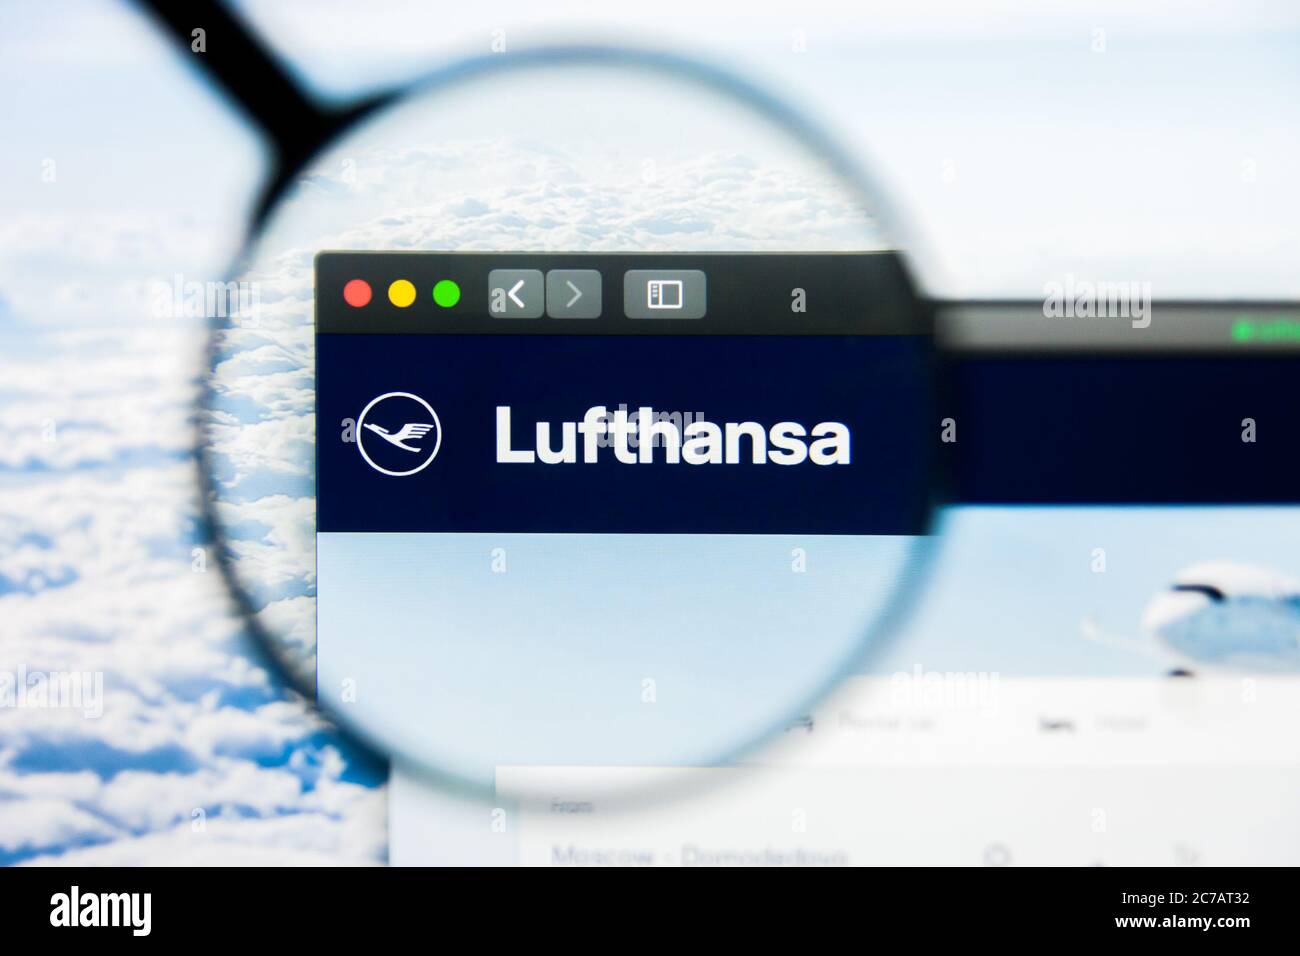 Los Angeles, California, USA - 21 Marzo 2019: Editoriale illustrativo della homepage del sito di Lufthansa. Logo Lufthansa visibile sullo schermo. Foto Stock